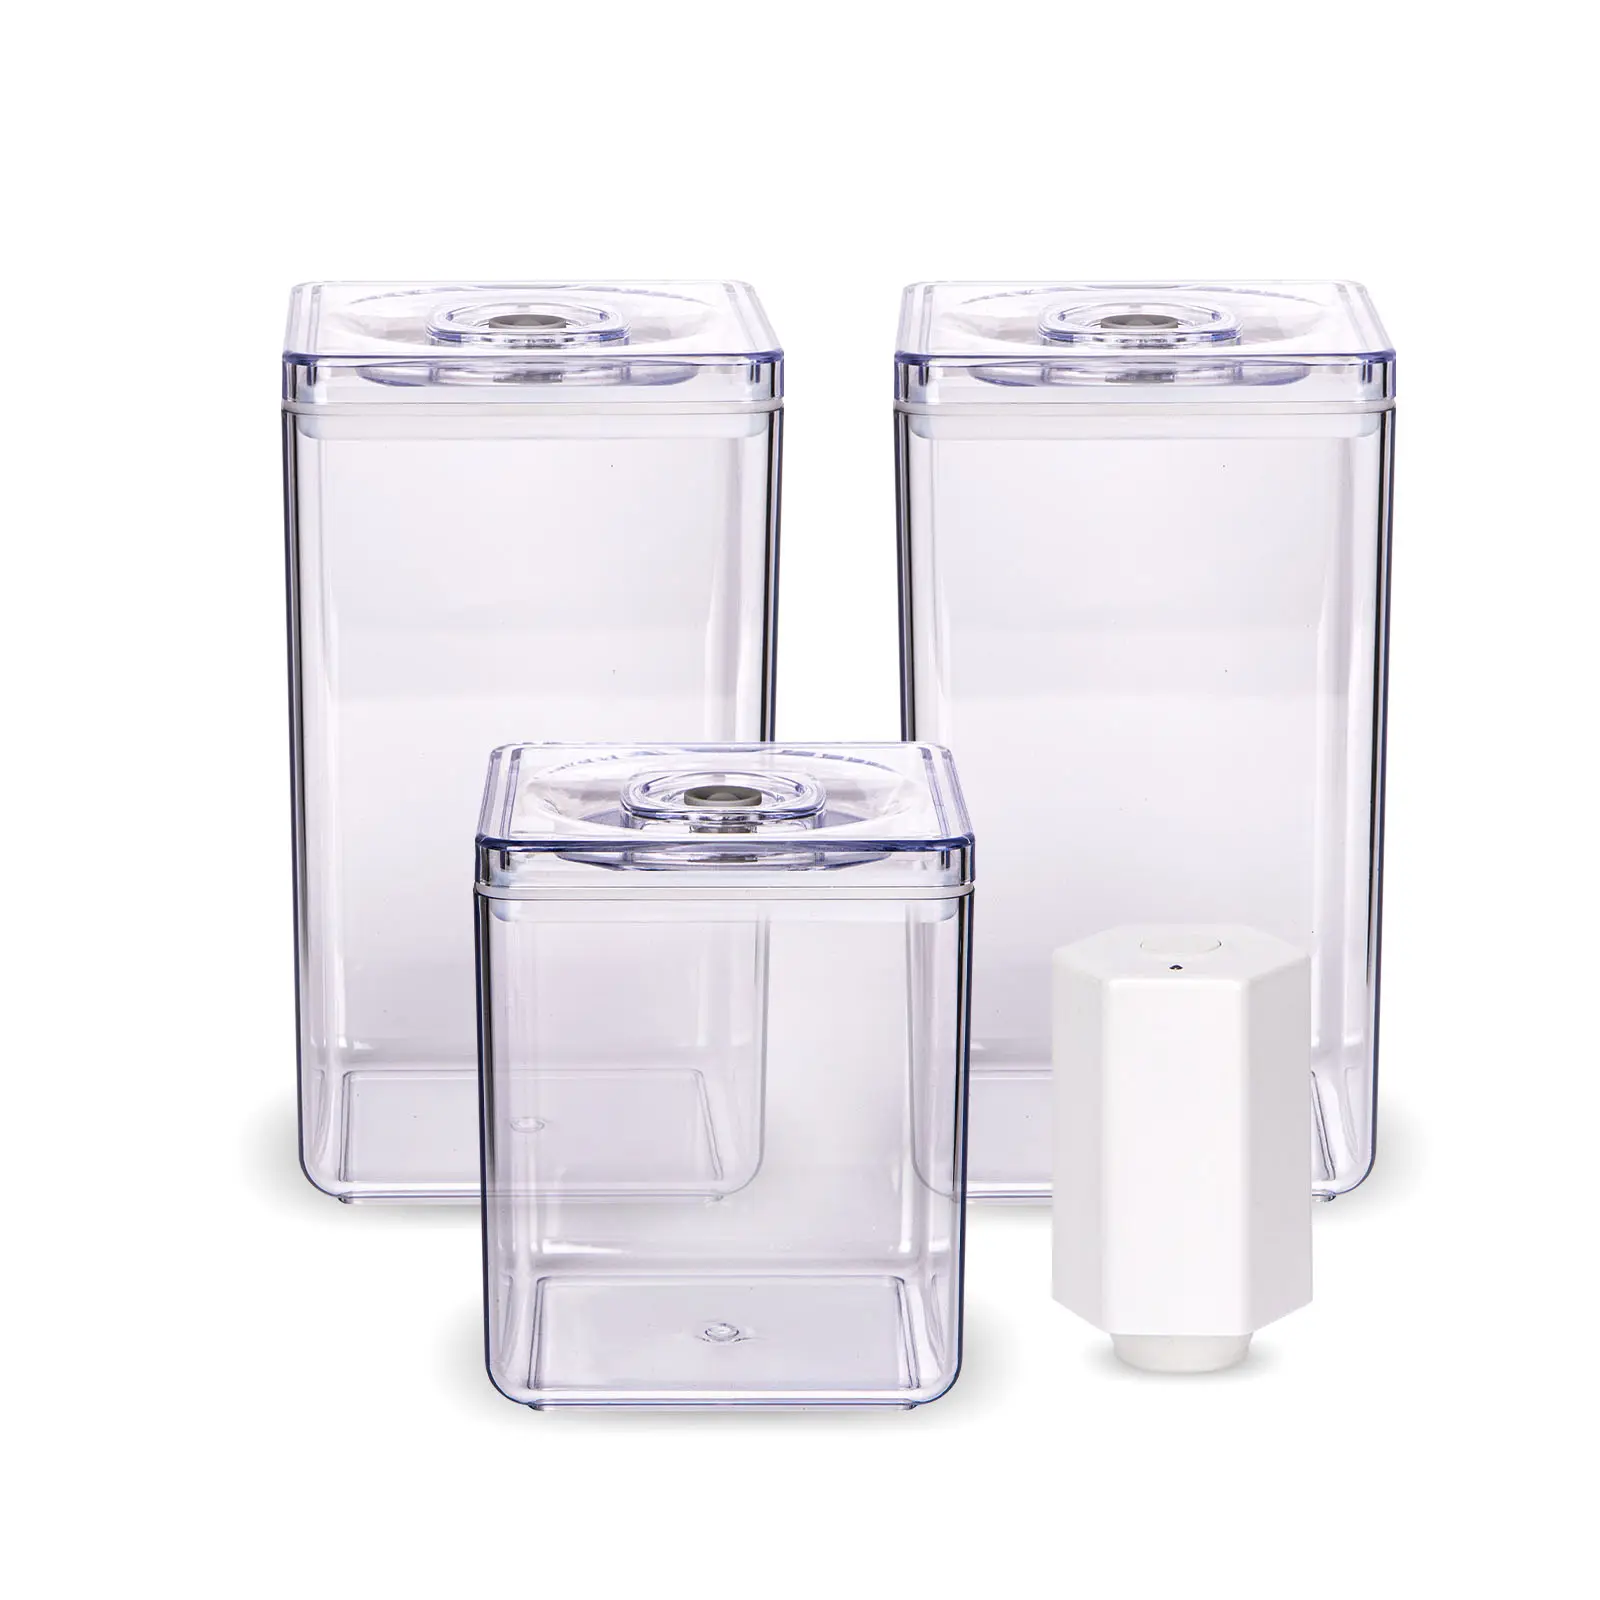 Ensemble de boîtes de rangement en plastique, contenants transparents pour la conservation des aliments sous vide, frais, hermétiques